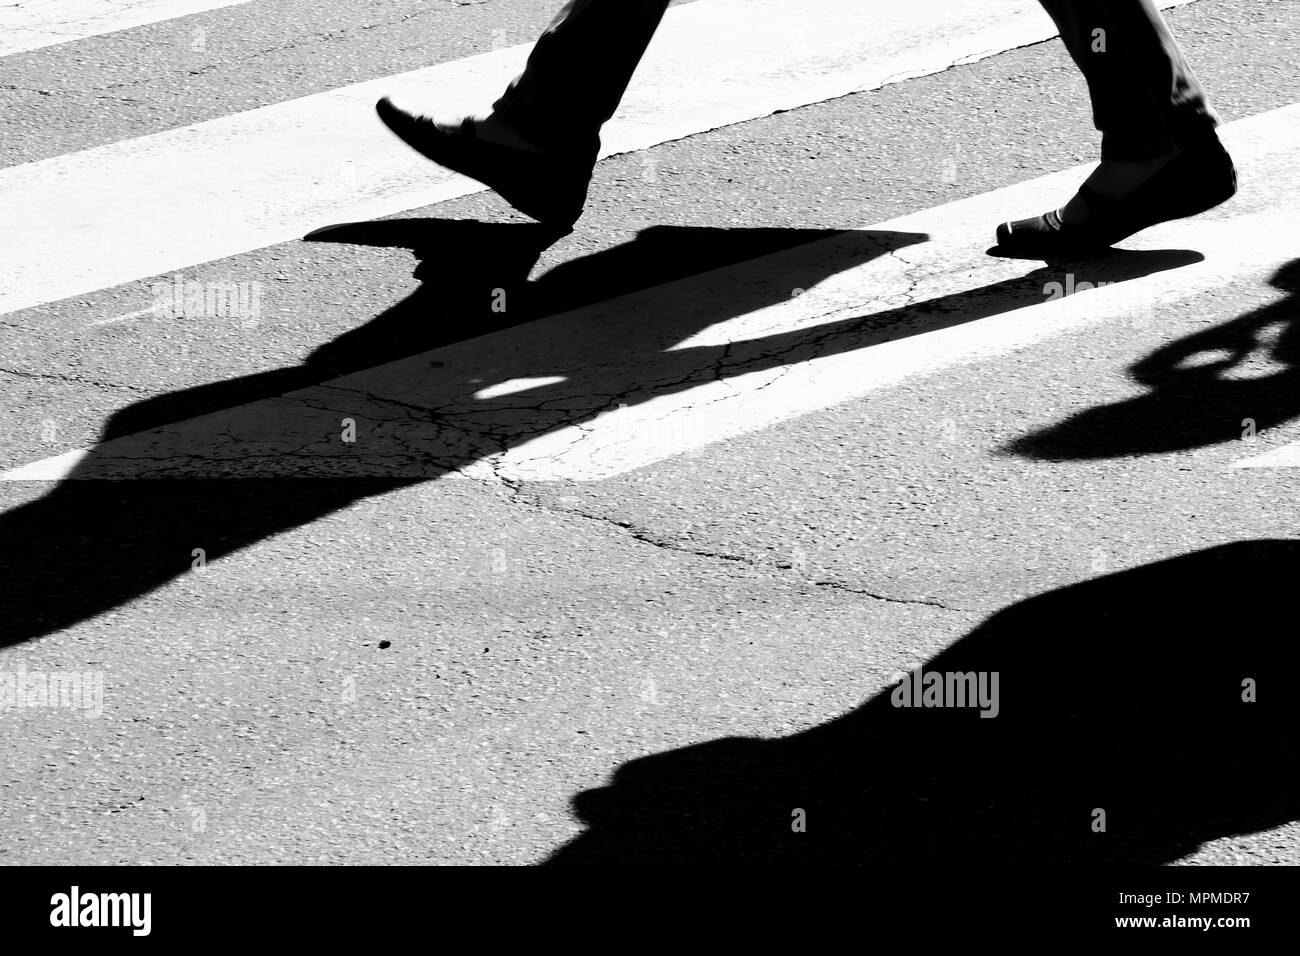 Rue de la ville floues avec passage piétons piétons en marche silhouettes et ombres en noir et blanc de contraste élevé Banque D'Images